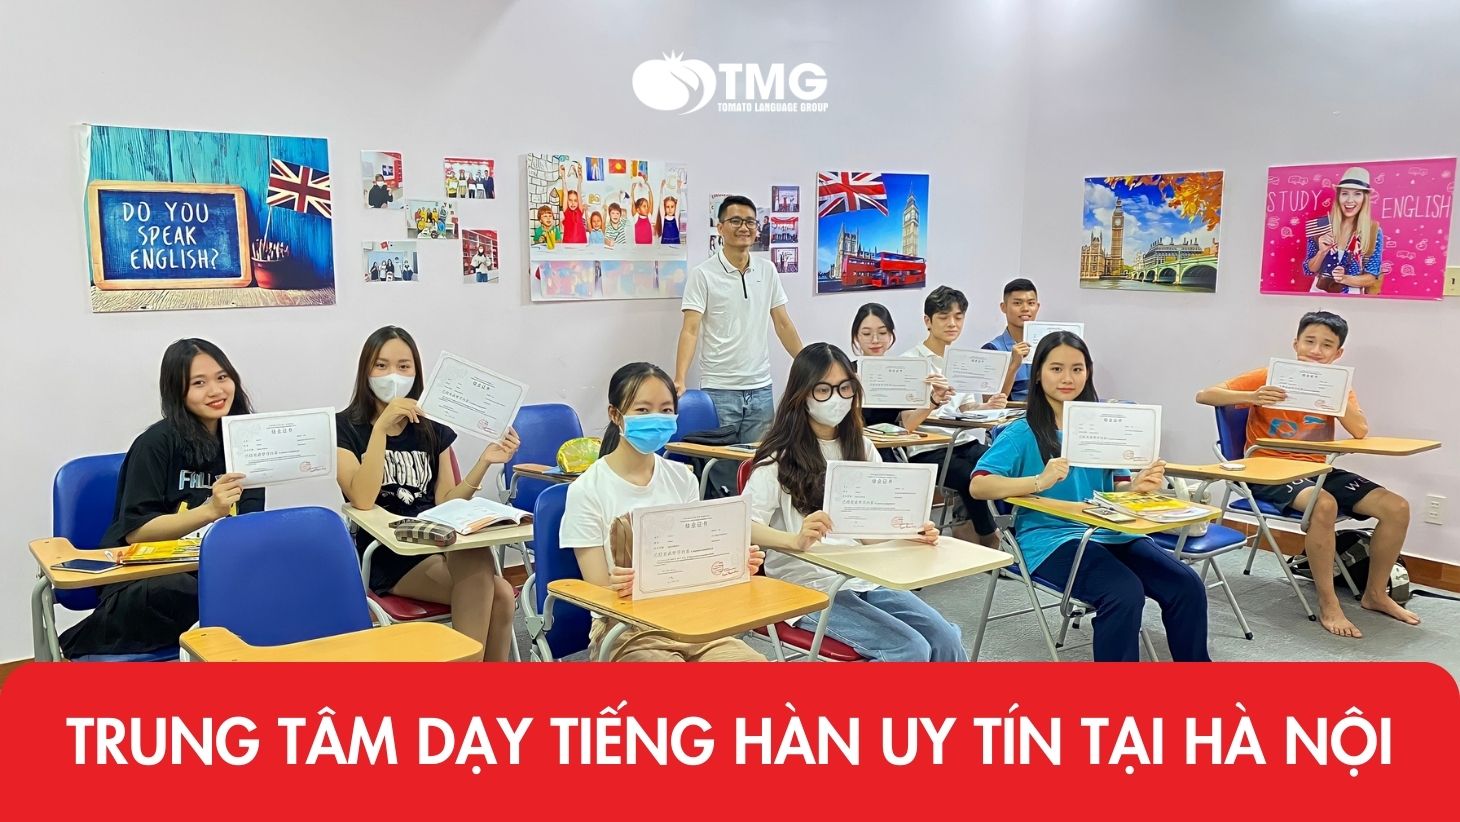 Trung tâm dạy tiếng Hàn uy tín tại Hà Nội